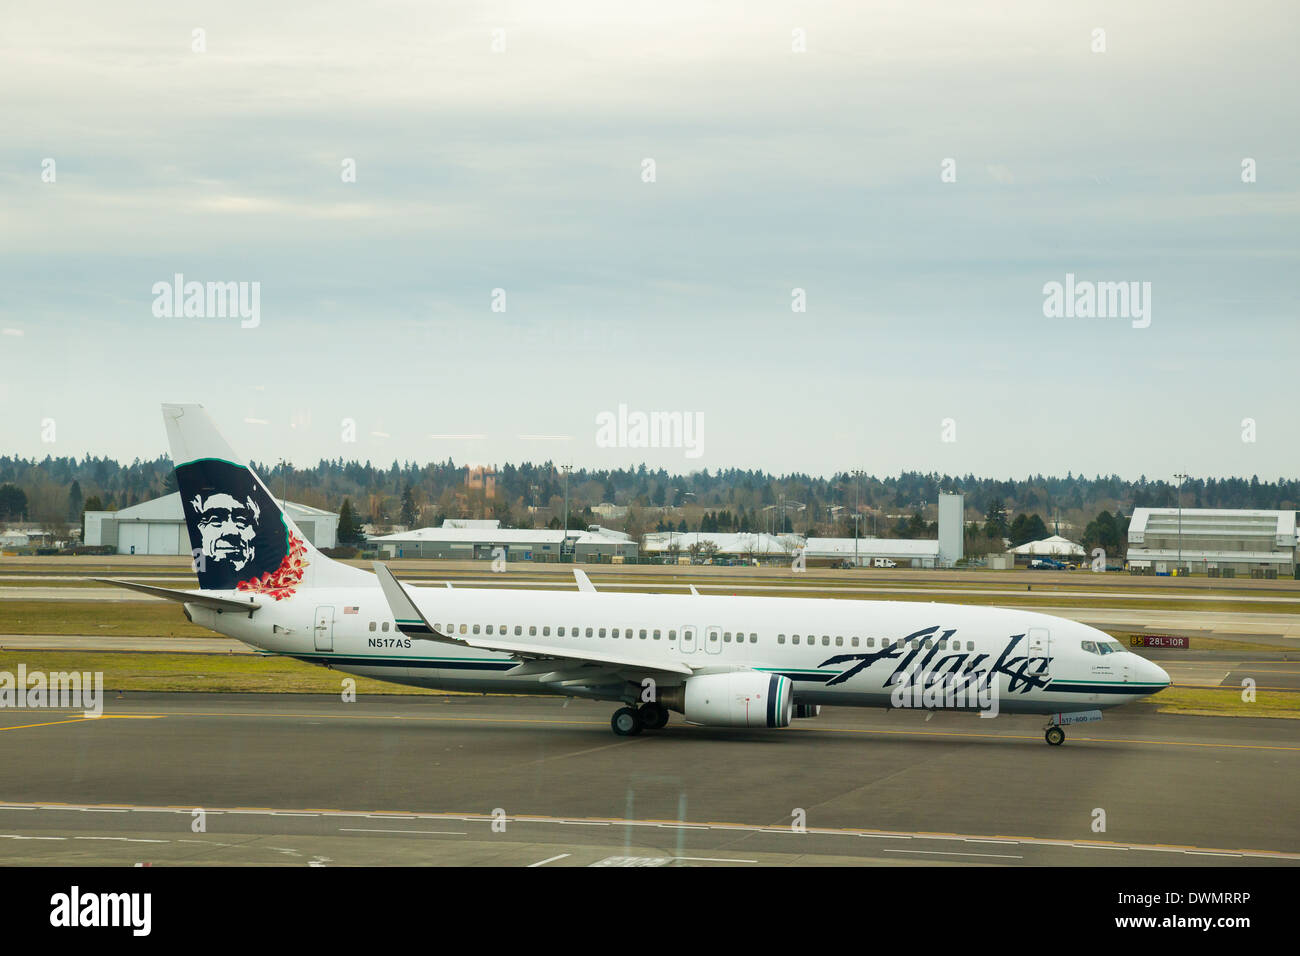 Portland, Oregon, USA - 27 de enero de 2014: un vuelo de Alaska Airlines, listos para el despegue en el aeropuerto internacional de portland pdx. Foto de stock